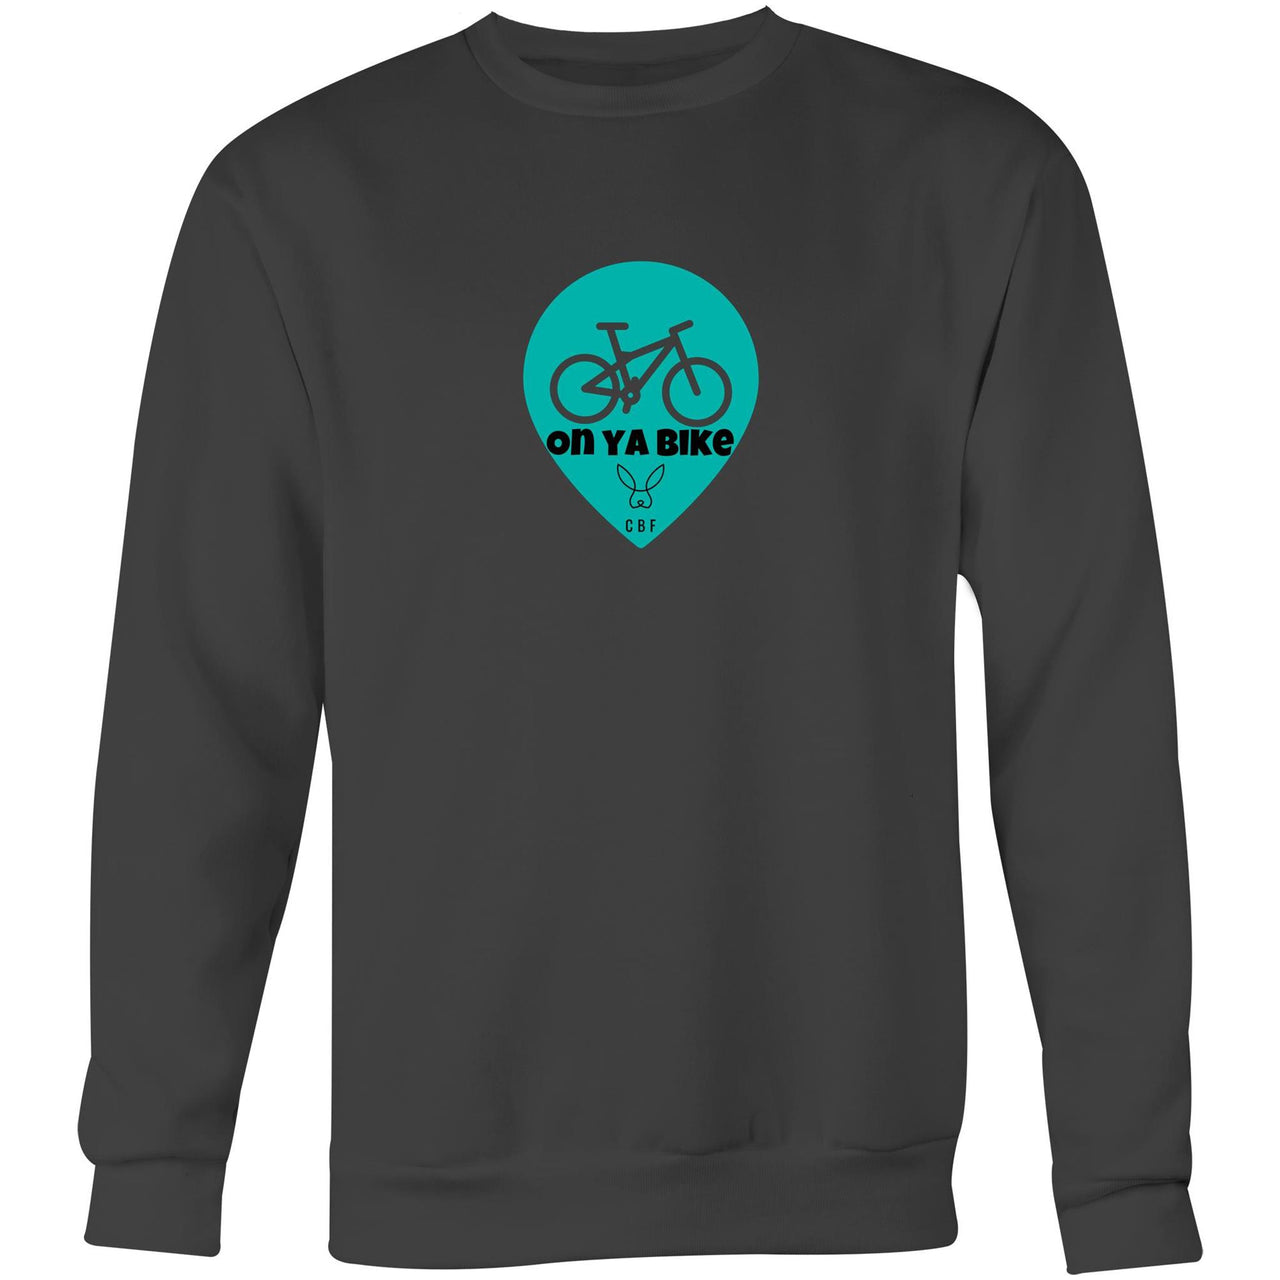 On Ya Bike Crew Sweatshirt Charcoal by CBF Clothing